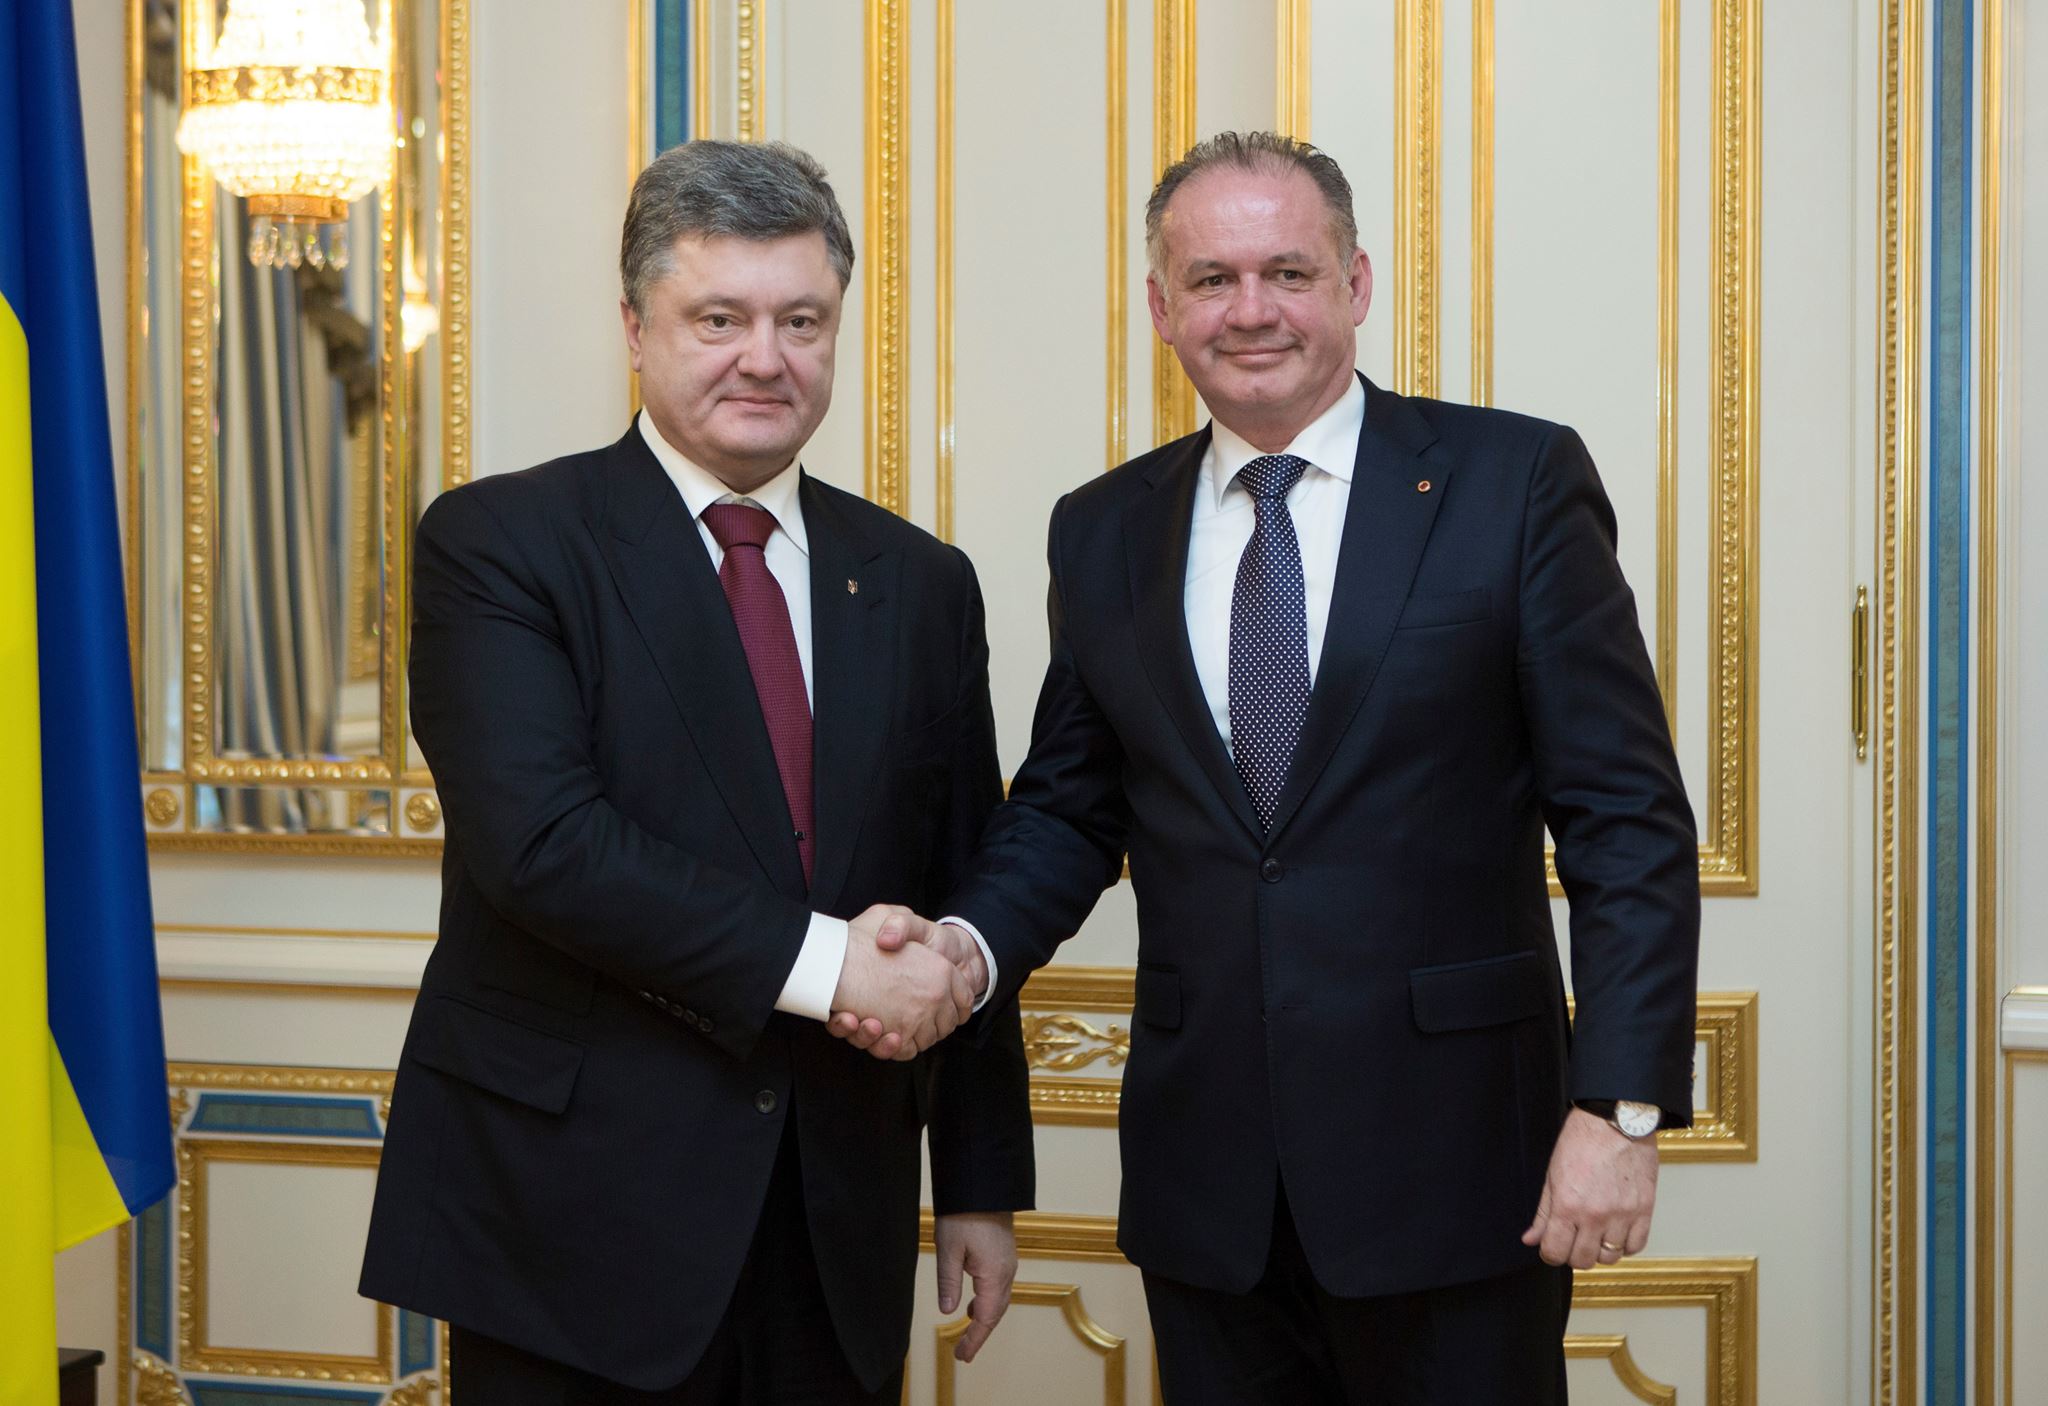 Prezident Kiska sa svojho ukrajinského náprotivka neopýtal, prečo sú dvaja slovenskí občania na zozname nežiaducich osôb. (Foto: archív)